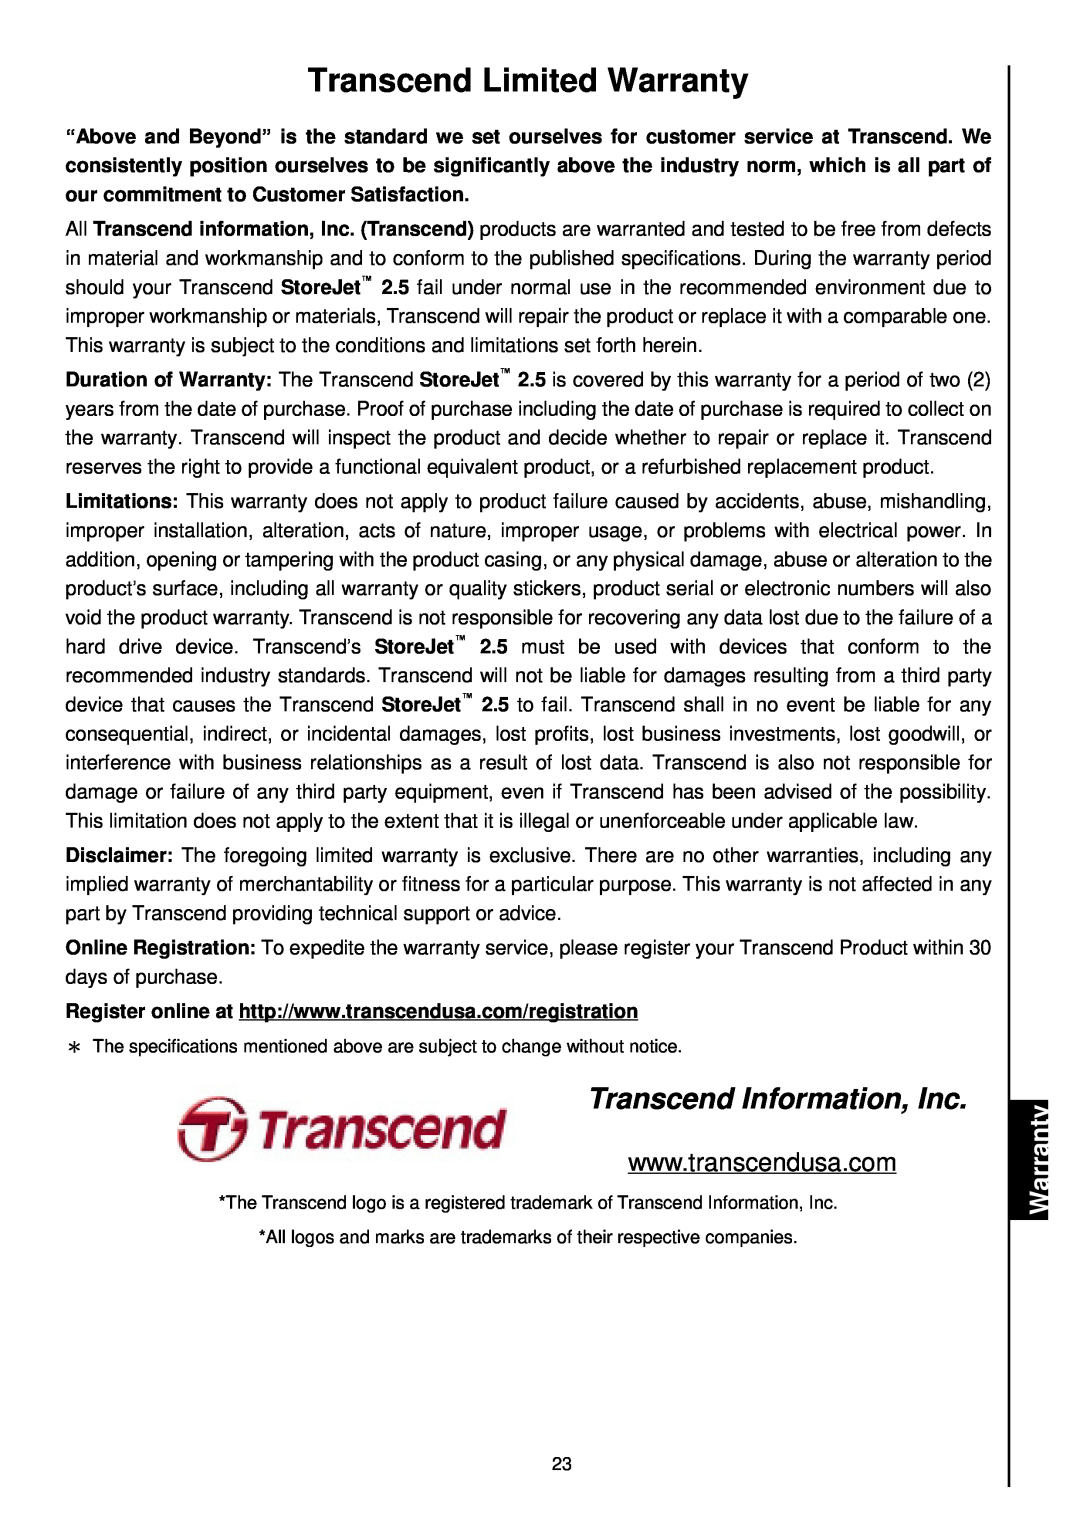 Transcend Information 25 user manual Transcend Limited Warranty, Transcend Information, Inc 